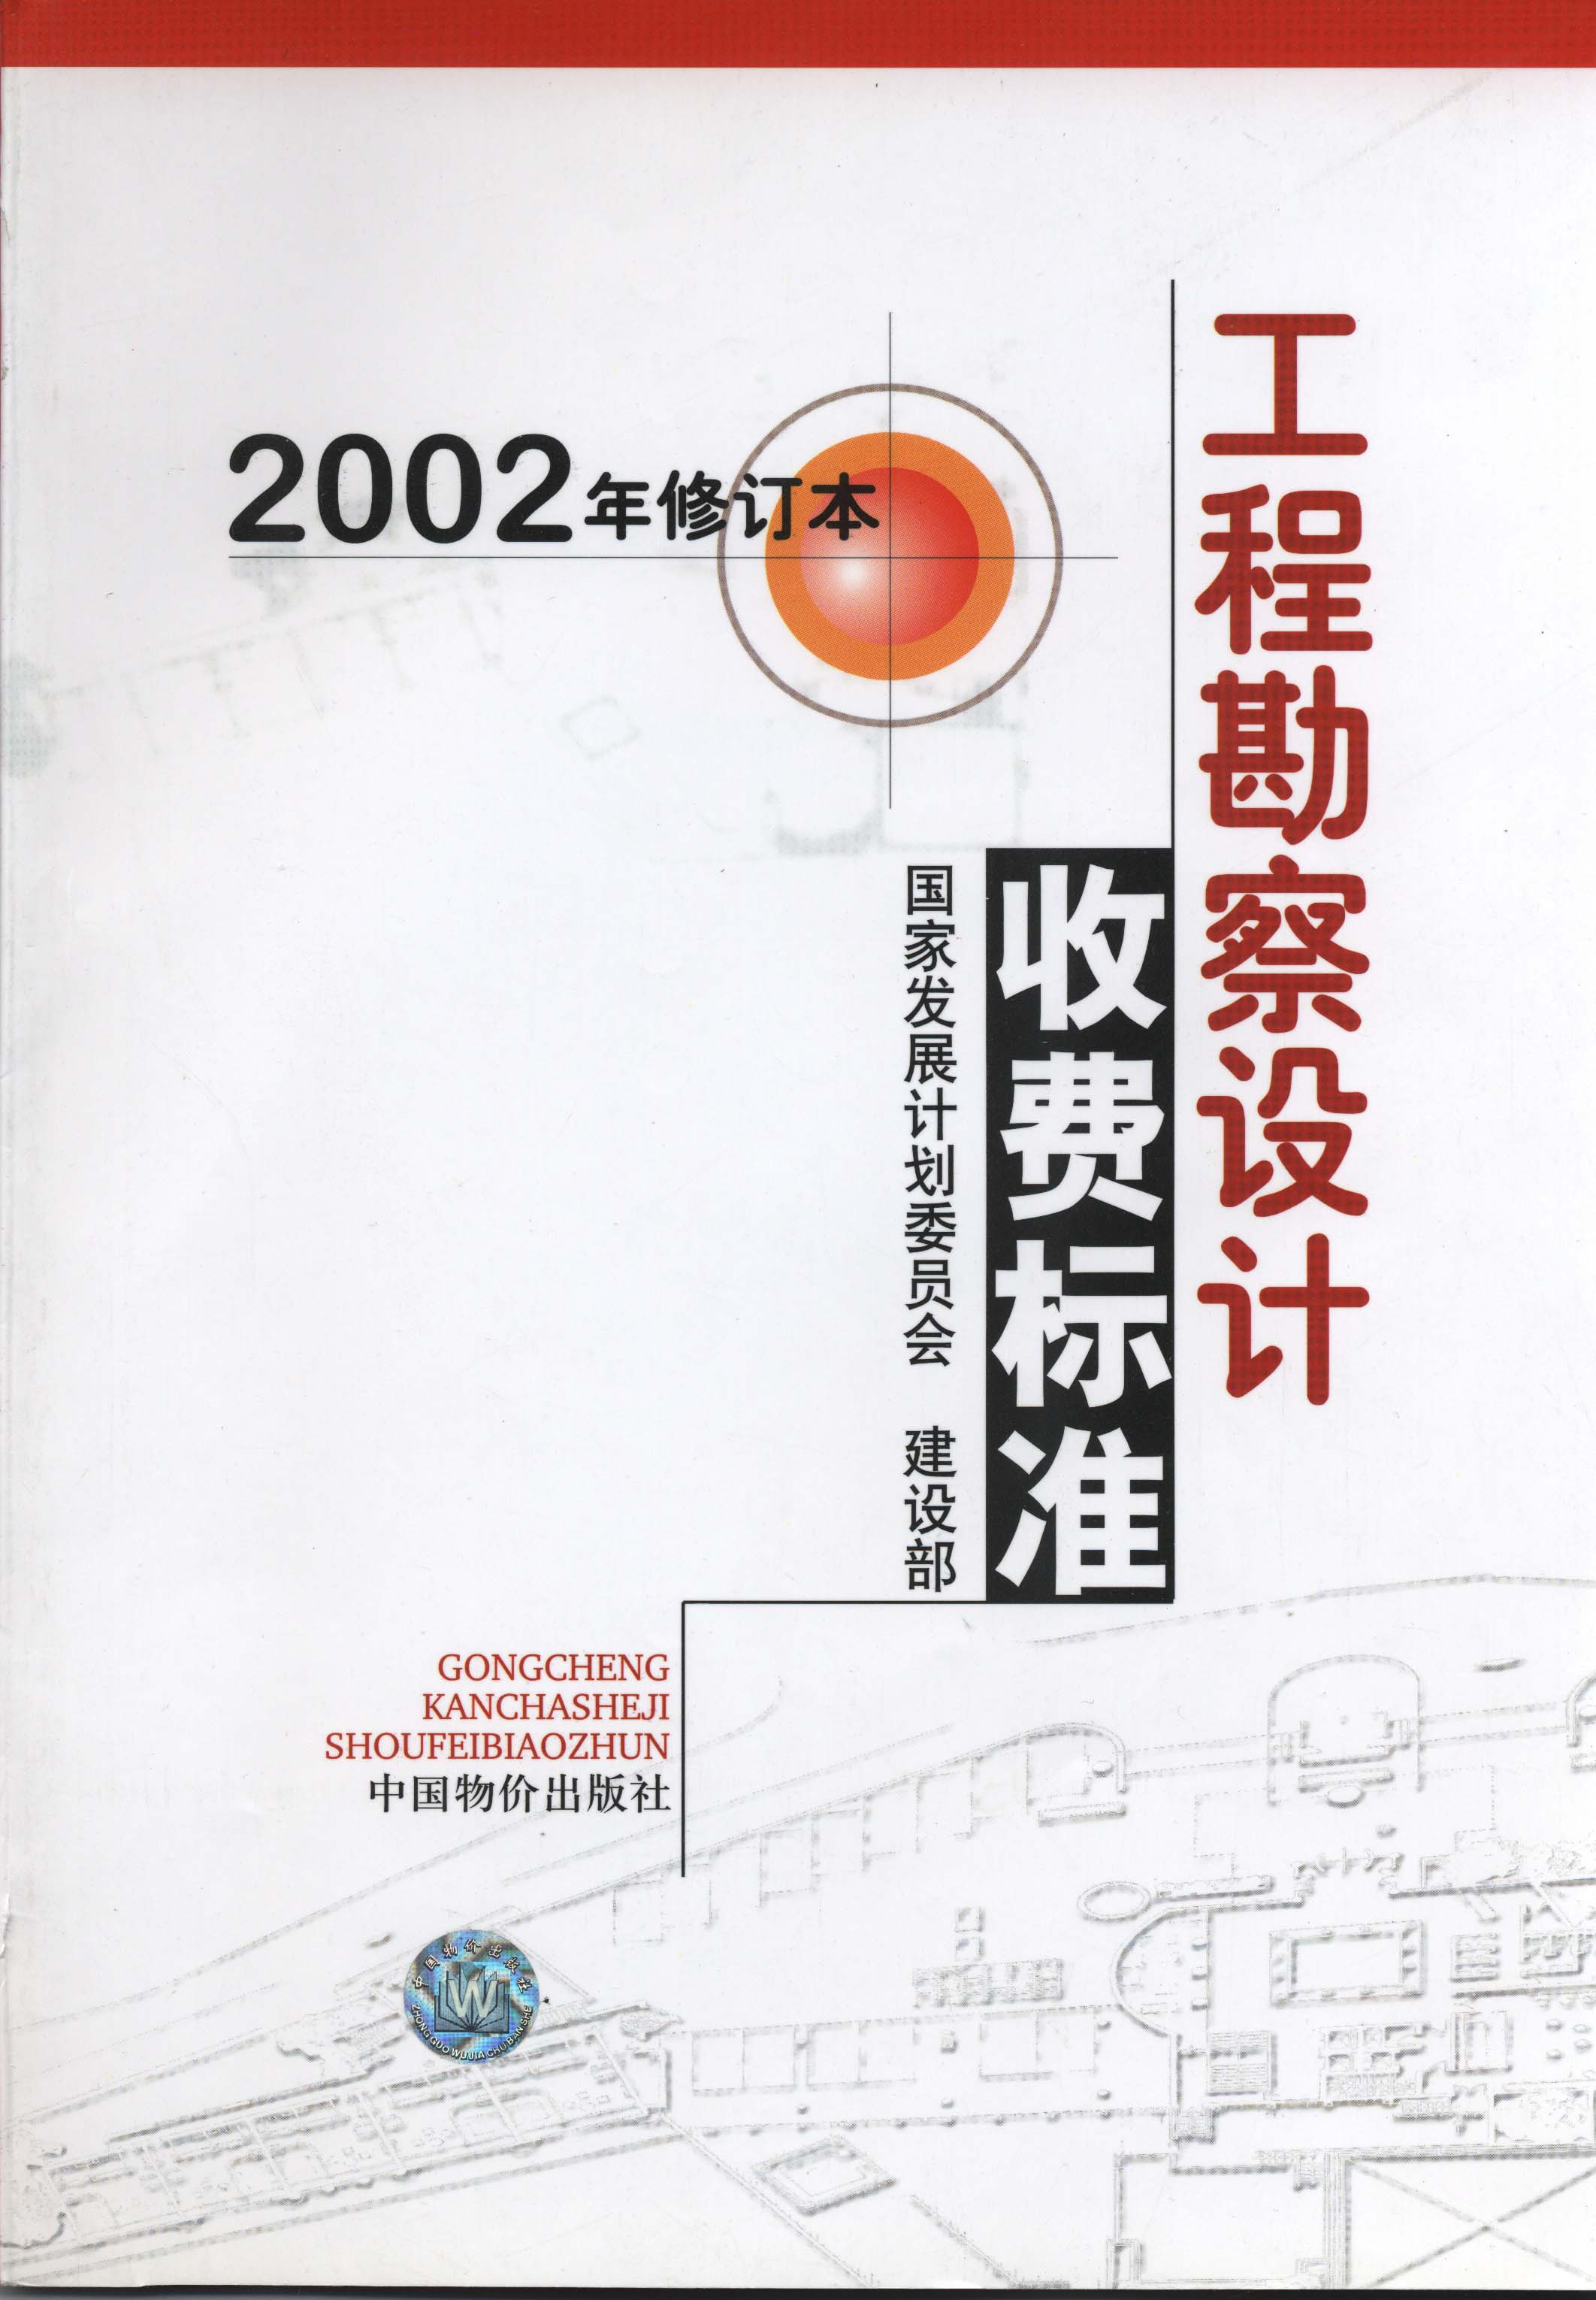 工程勘察设计收费标准（2002年修订本）完整版_页面_001.jpg